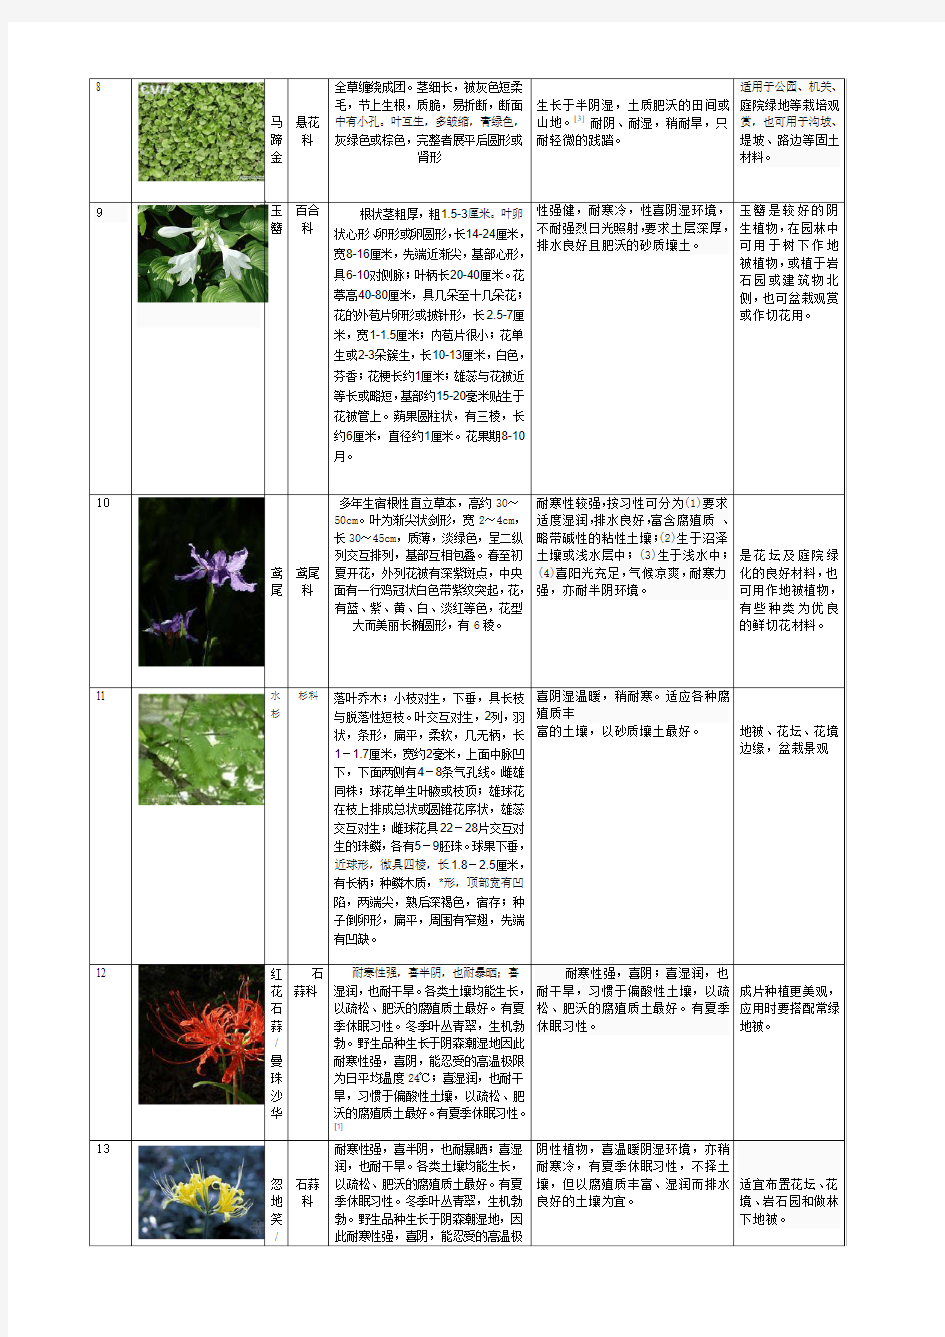 观赏植物学50种植物总结,含图。